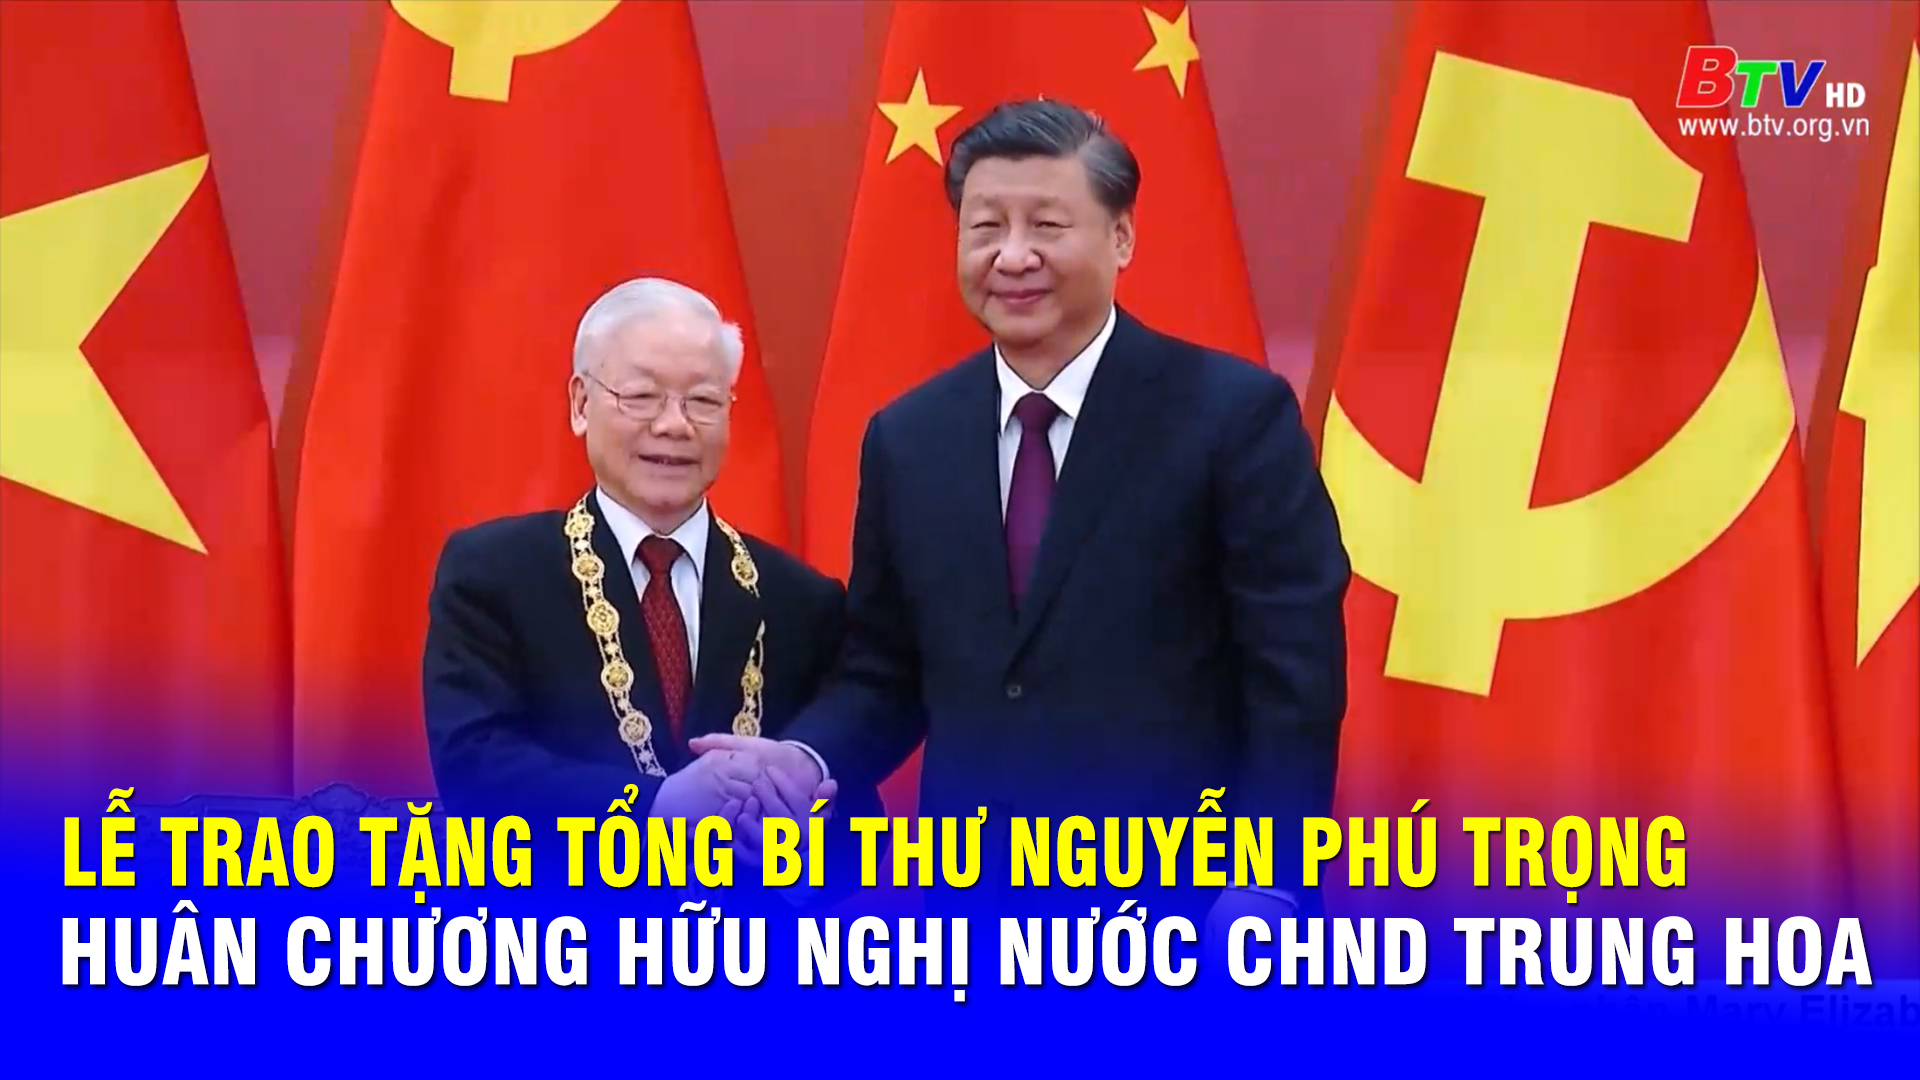 Lễ trao tặng Tổng Bí thư Nguyễn Phú Trọng Huân chương Hữu nghị nước CHND Trung Hoa